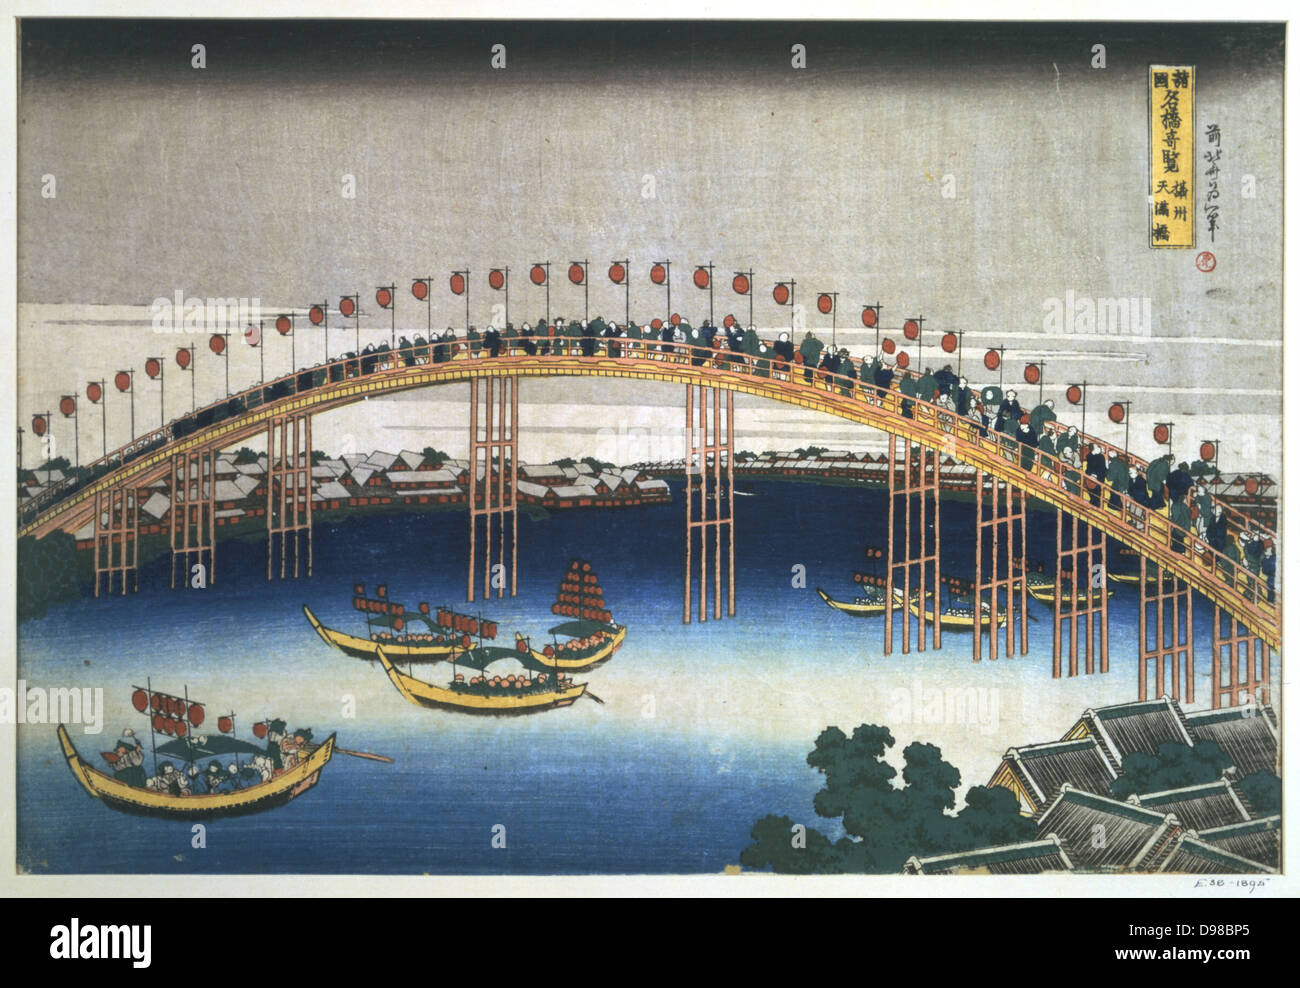 Temma-Brücke bei Osaka', c1830. Farbiger Holzschnitt. Menschen Sie Masse auf der Holzbrücke, die mit bunten Lampions geschmückt, und schauen Sie hinunter auf die Boote unten die ähnliche Laternen tragen. Der japanische Künstler Hokusai Katsushika (1770-1849) und Grafiker. Stockfoto